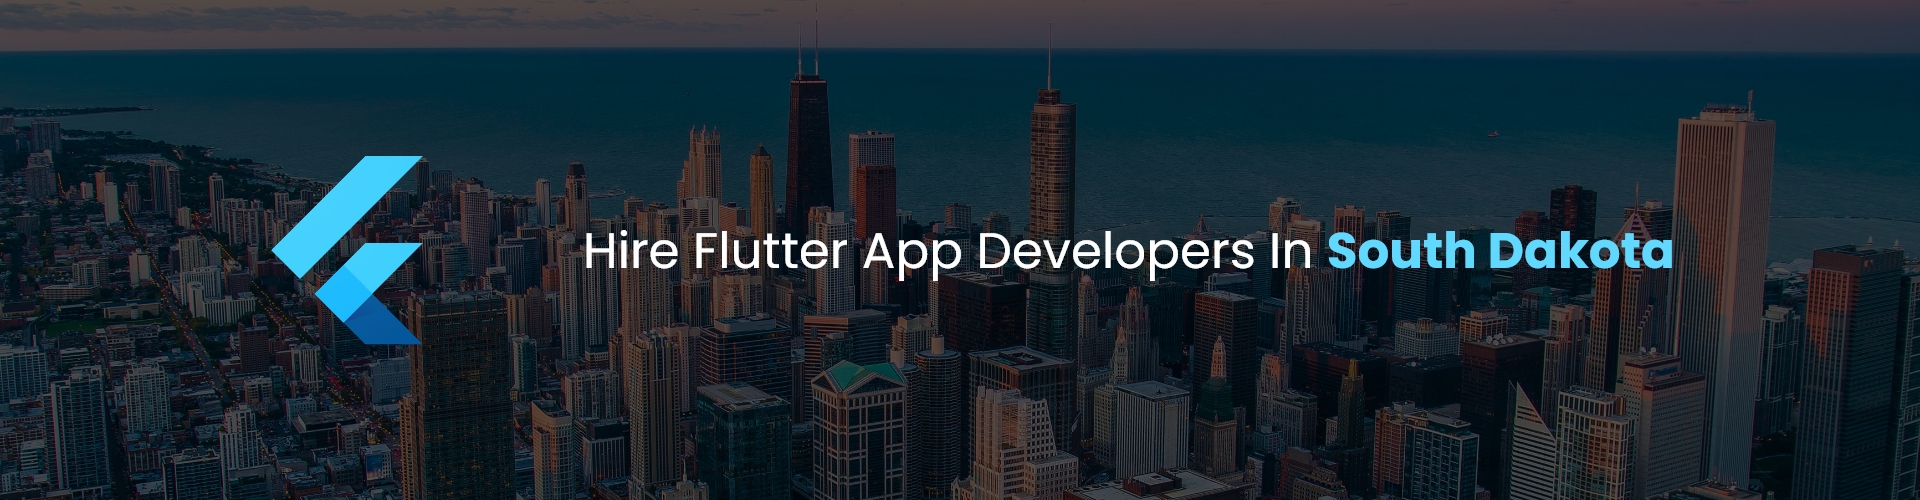 flutter app developers in sd 1